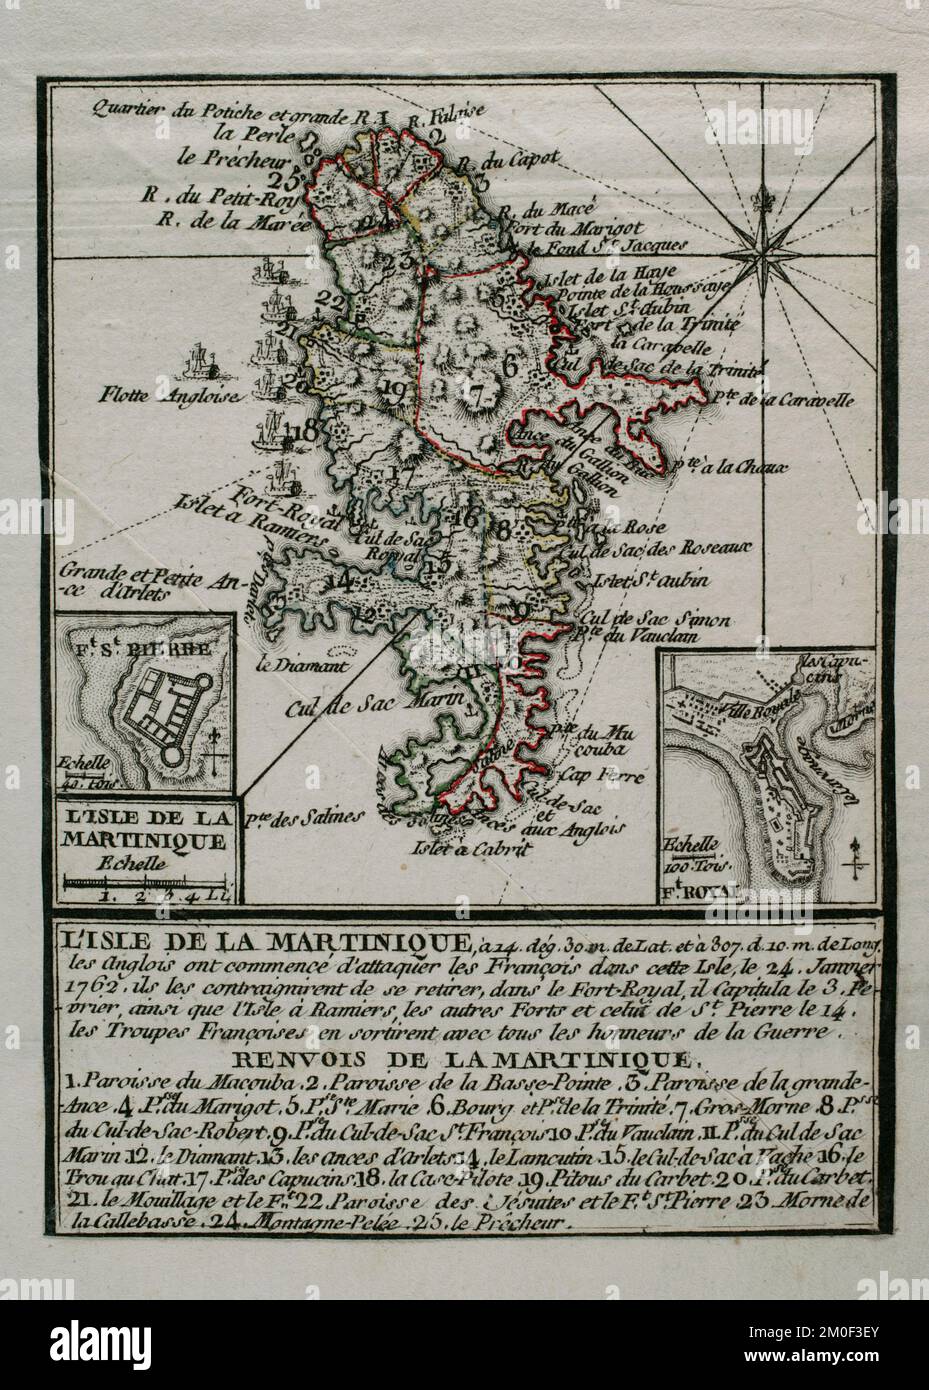 Martinique, 1762. Île capturée par les Britanniques des Français pendant la guerre de sept ans (1756-1763), restant en leur possession de 1762 à 1763. Les Britanniques ont commencé à attaquer les Français sur l'île le 24 janvier 1762, les obligeant à se retirer dans la capitale, fort-Royal. La France a capitulé le 3 février. Le 12 février, toute l'île était sous contrôle britannique. Carte publiée en 1765 par le cartographe Jean de Beaurain (1696-1771) comme illustration de sa Grande carte d'Allemagne, avec les événements qui ont eu lieu pendant la guerre de sept ans. Armée alliée en rouge et armée française en bl Banque D'Images